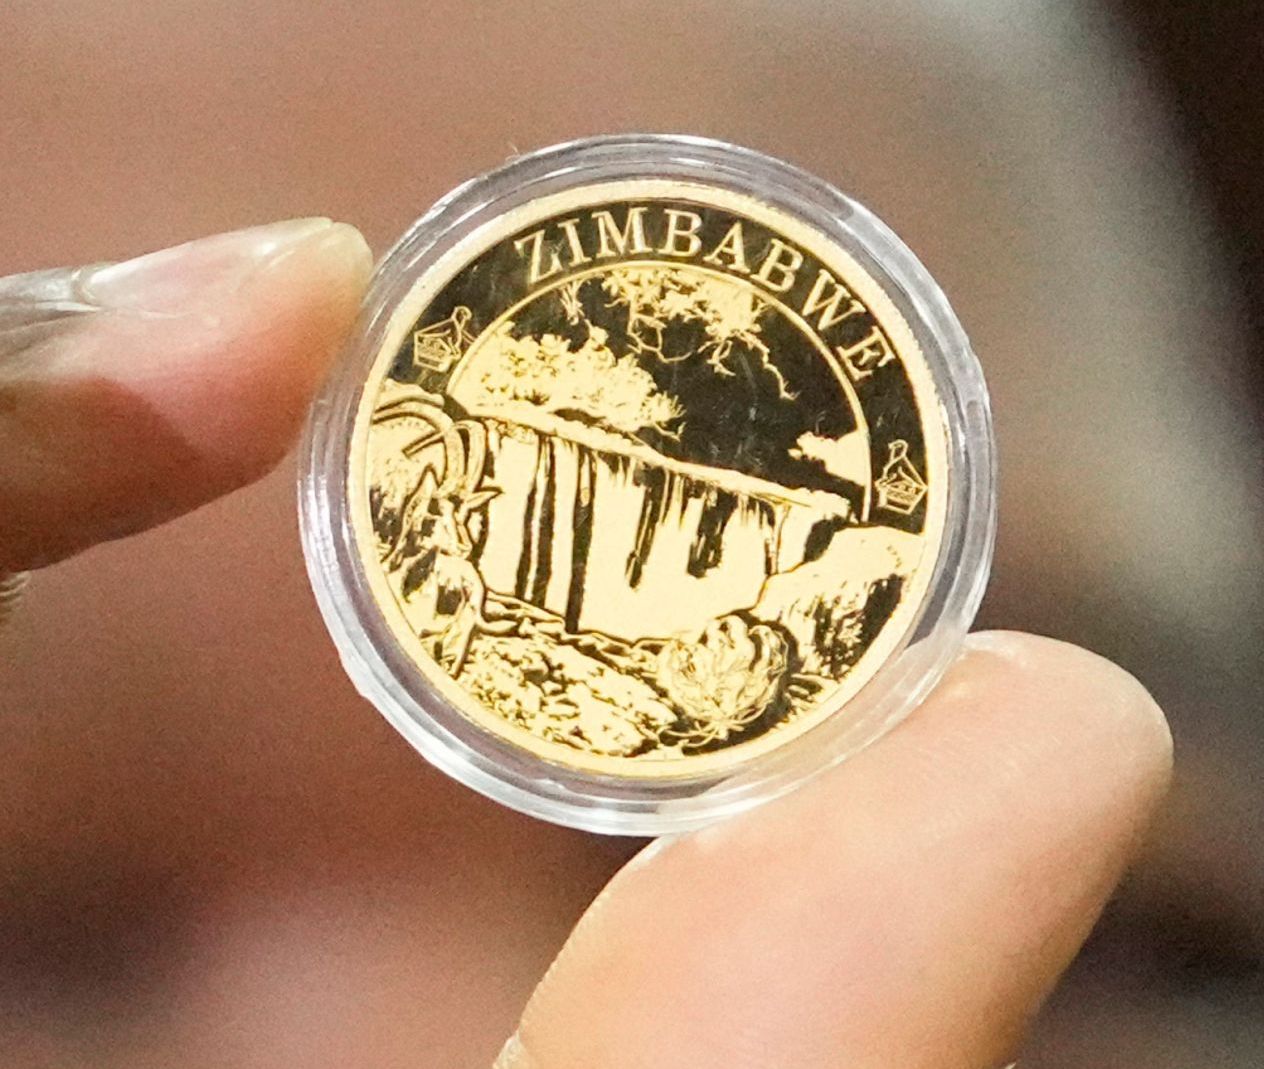 Zimbabwe 1 oz gold coin